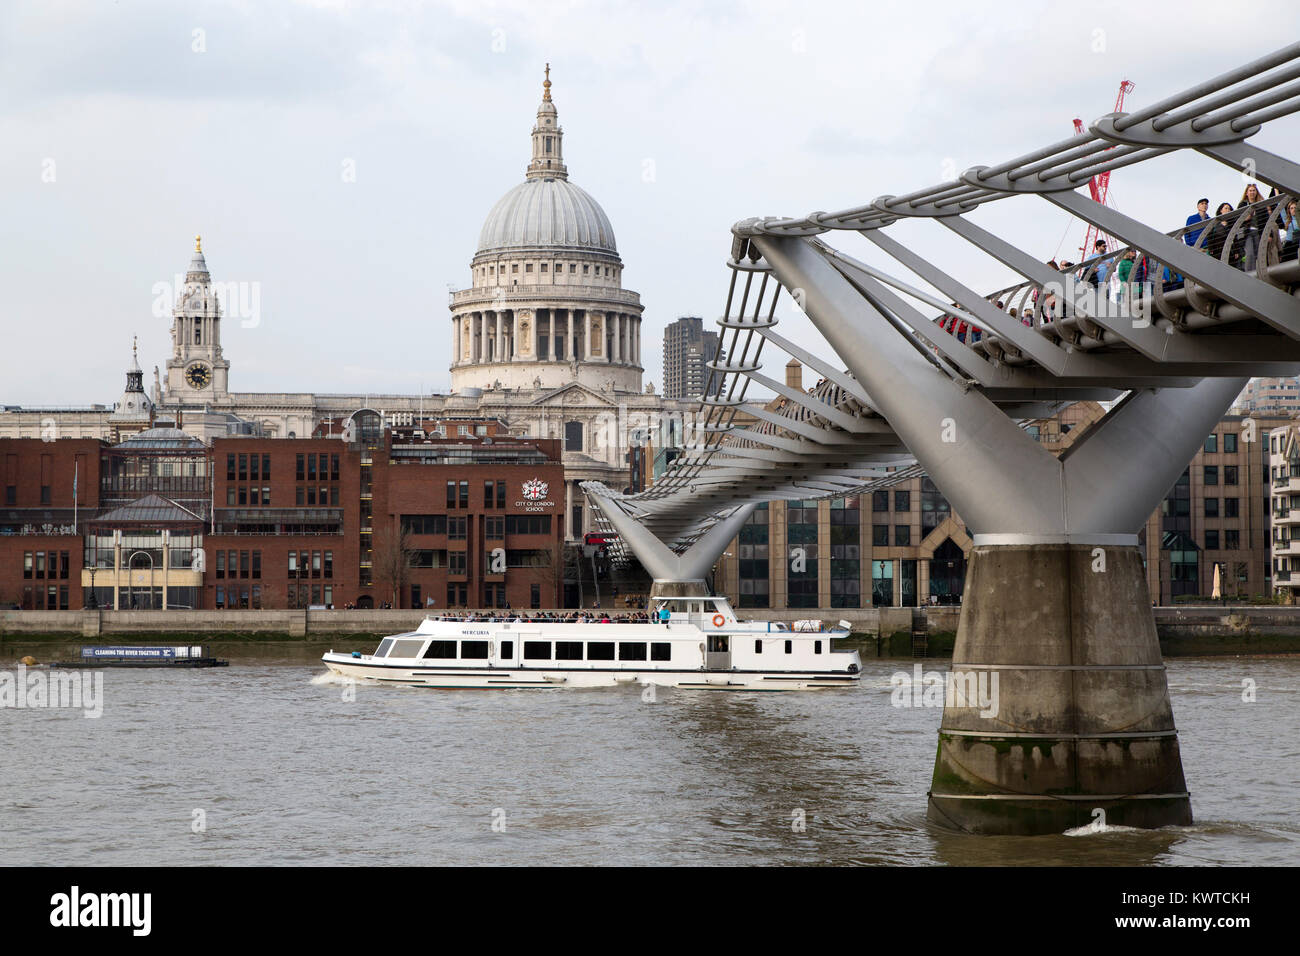 Une croisière navire sous le pont du millénaire sur la Tamise à Londres, en Angleterre. Le dôme de la Cathédrale St Paul est situé dans l'arrière-plan Banque D'Images